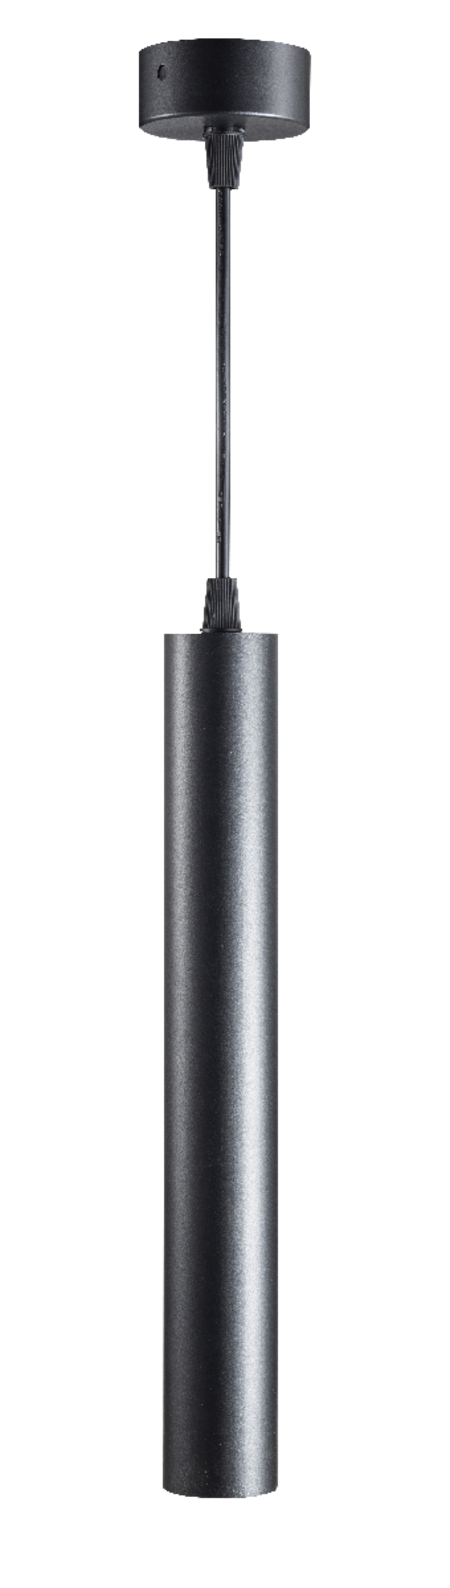 Подвесной светодиодный светильник Fiberli Tube460BN 12110202